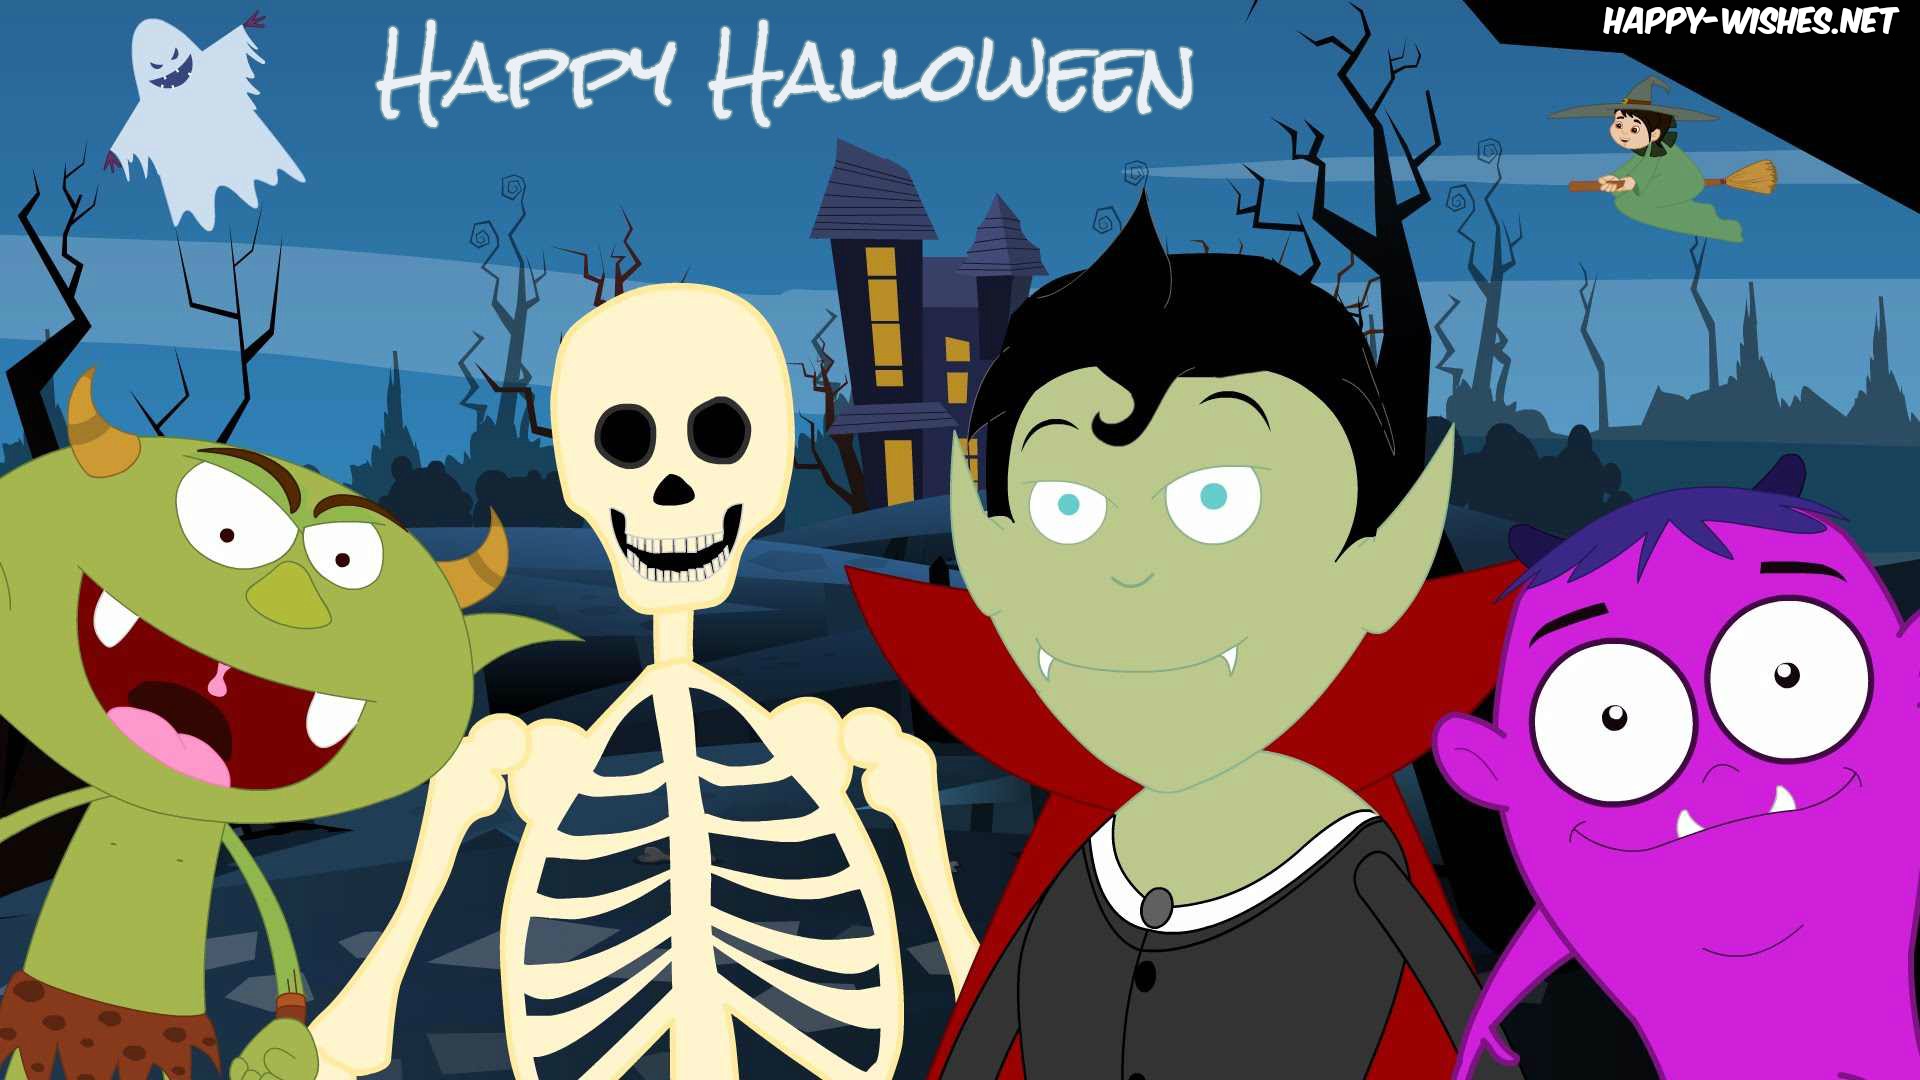 Happy Halloween Cartoon Images